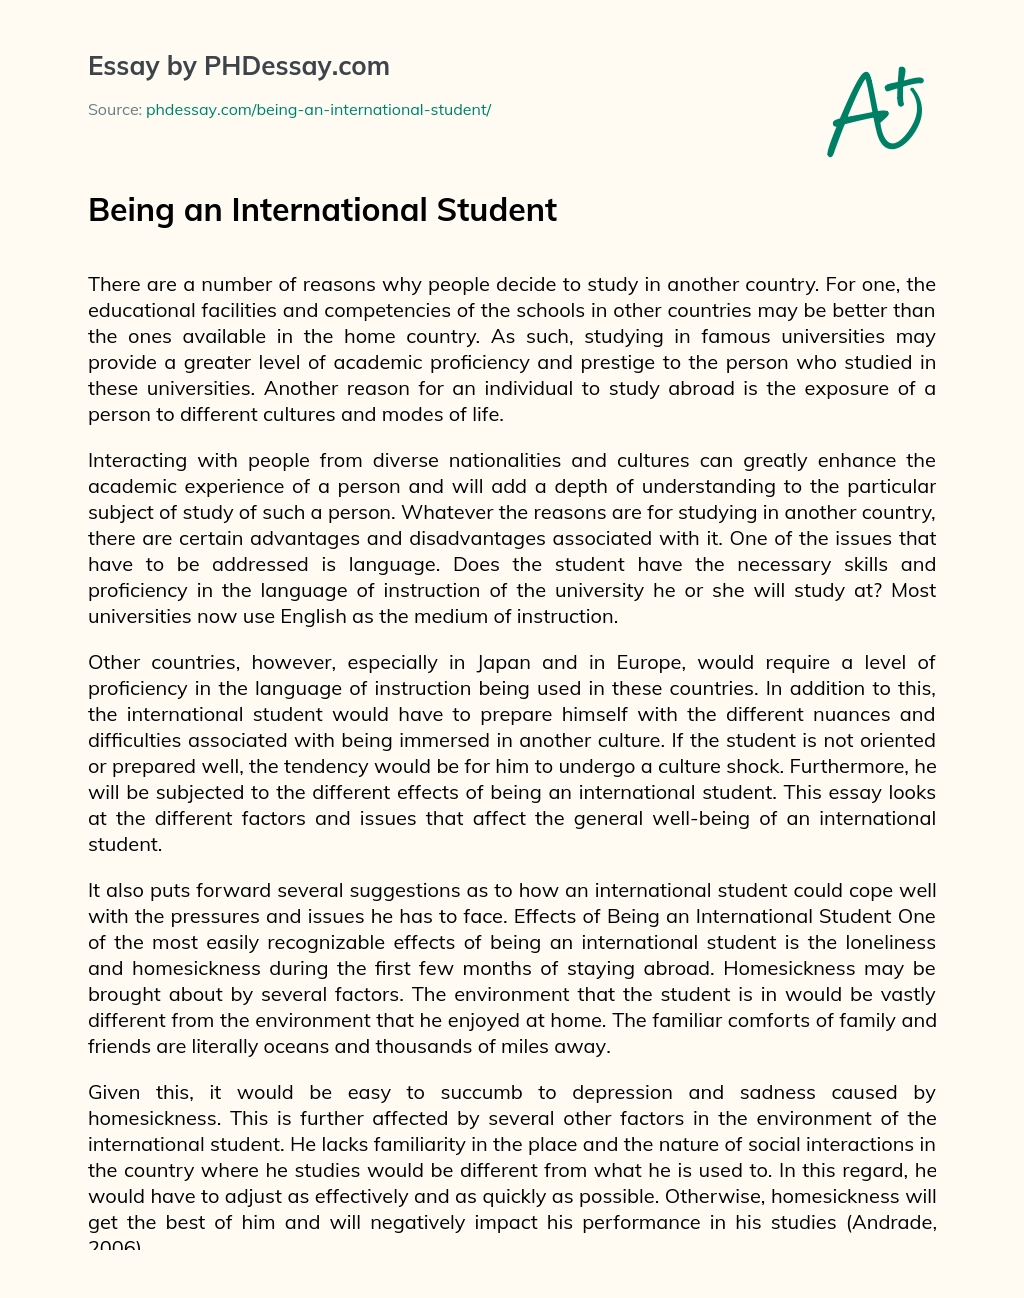 Being an International Student essay